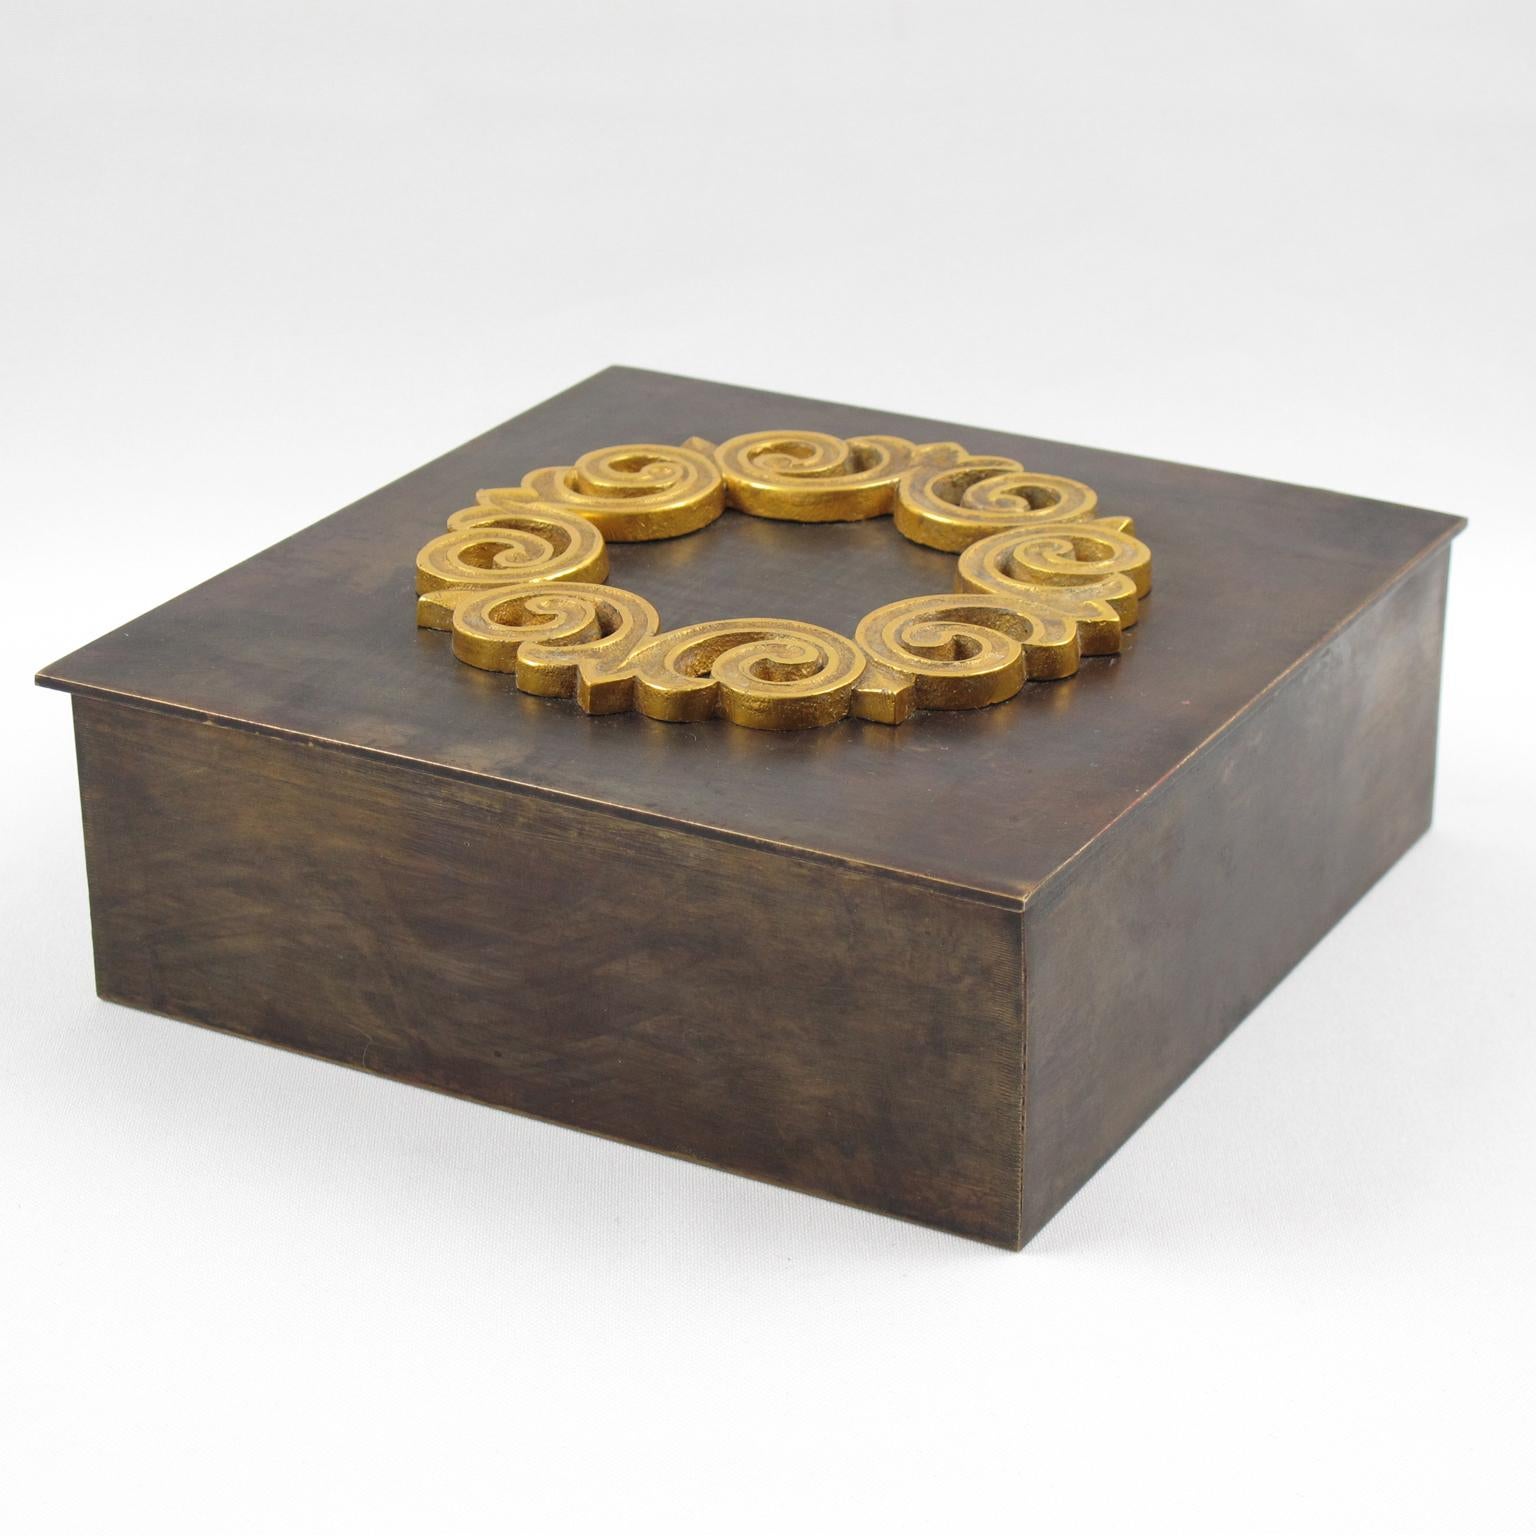 Diese wunderbare dekorative Schachtel wurde in den 1940er Jahren in Frankreich hergestellt. Die geometrische, quadratische Form hat ein modernistisches, minimalistisches Design mit industriellem Flair. Das hochwertige Messingmetall hat eine